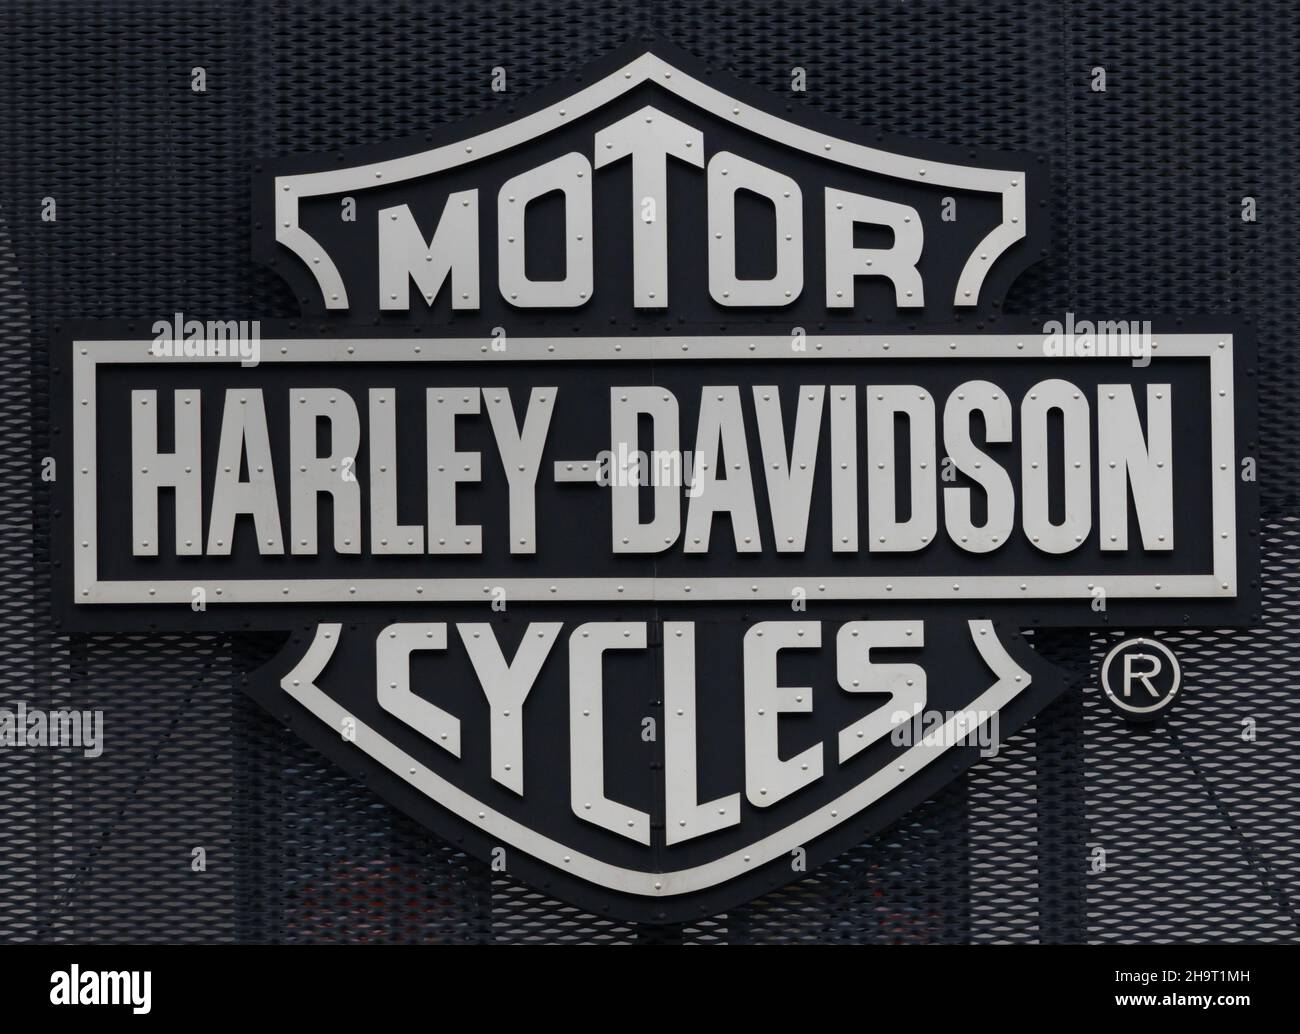 Poznan Polen - Juni 21,2021: Harley-Davidson Logo an der Wand. Harley-Davidson ist ein amerikanischer Motorradhersteller. Stockfoto